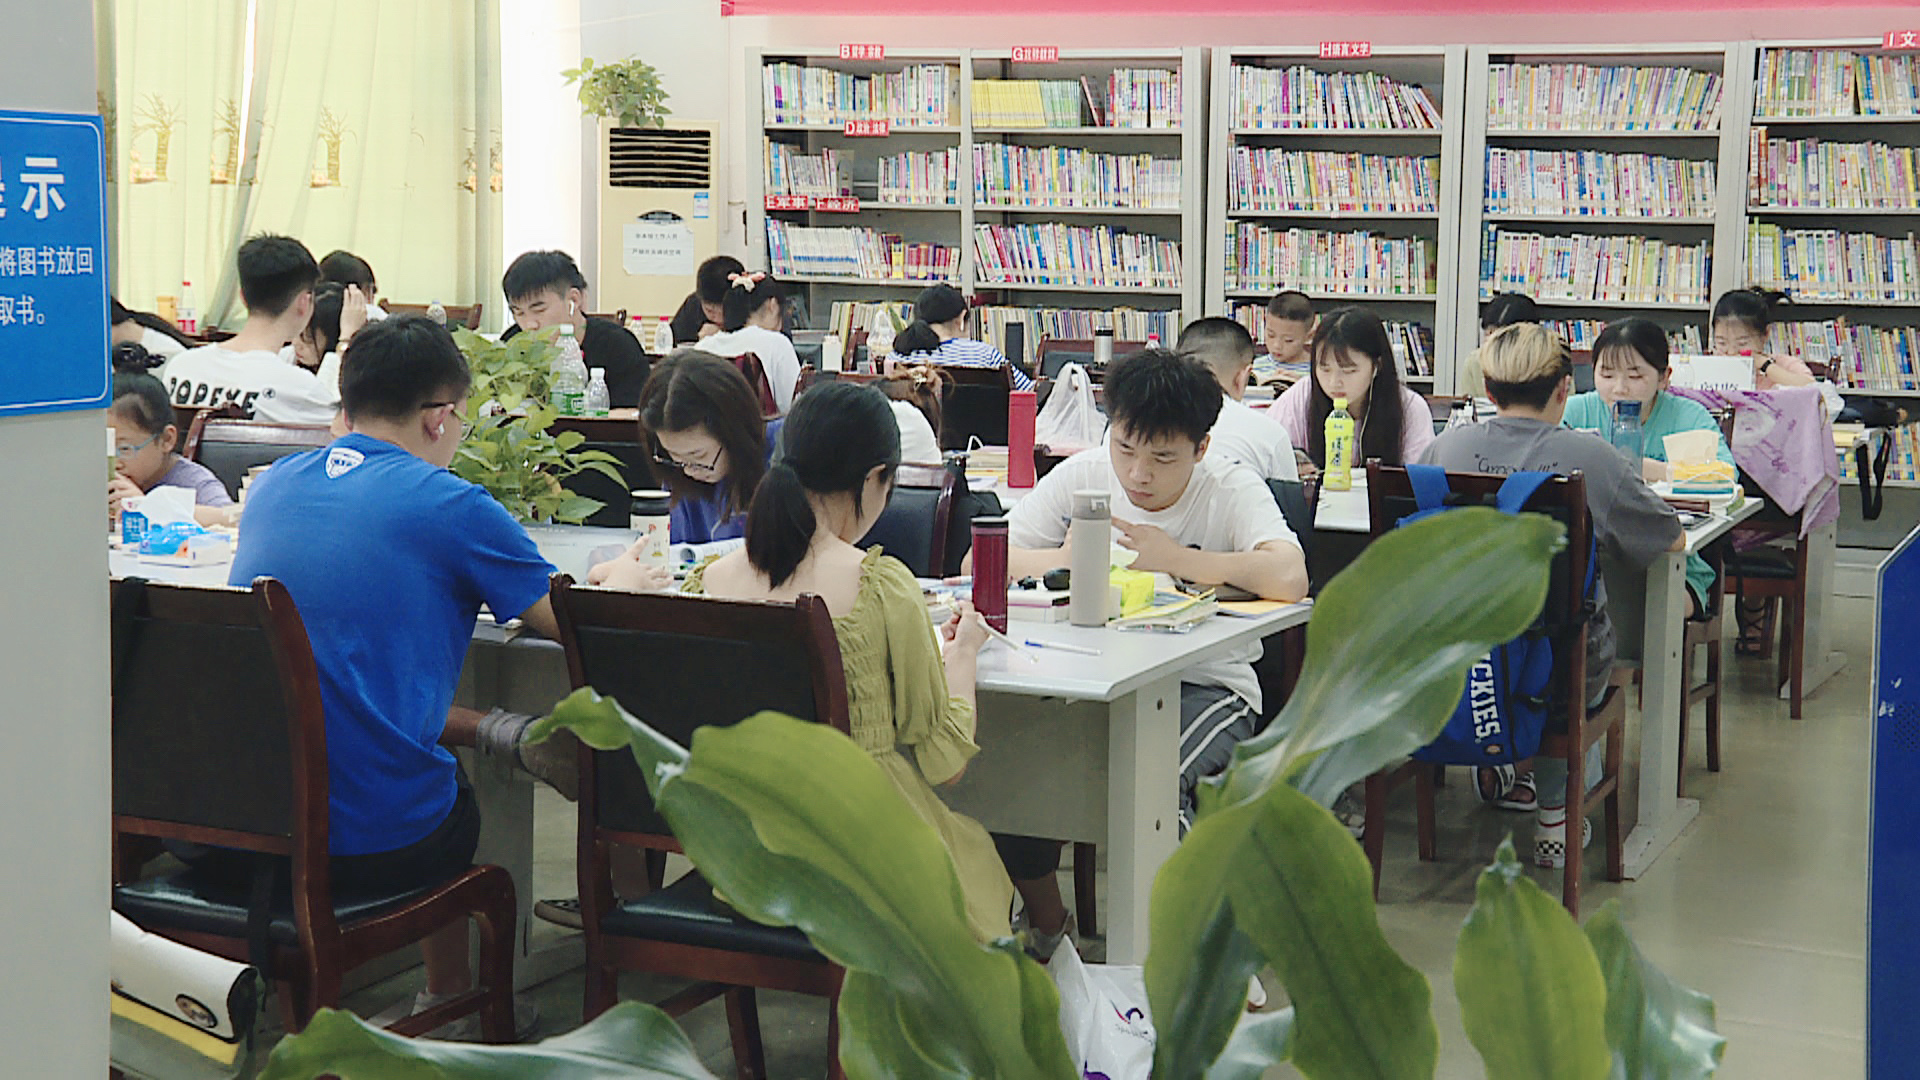 学生们在图书馆看书学习(摄影:杨圣龙)